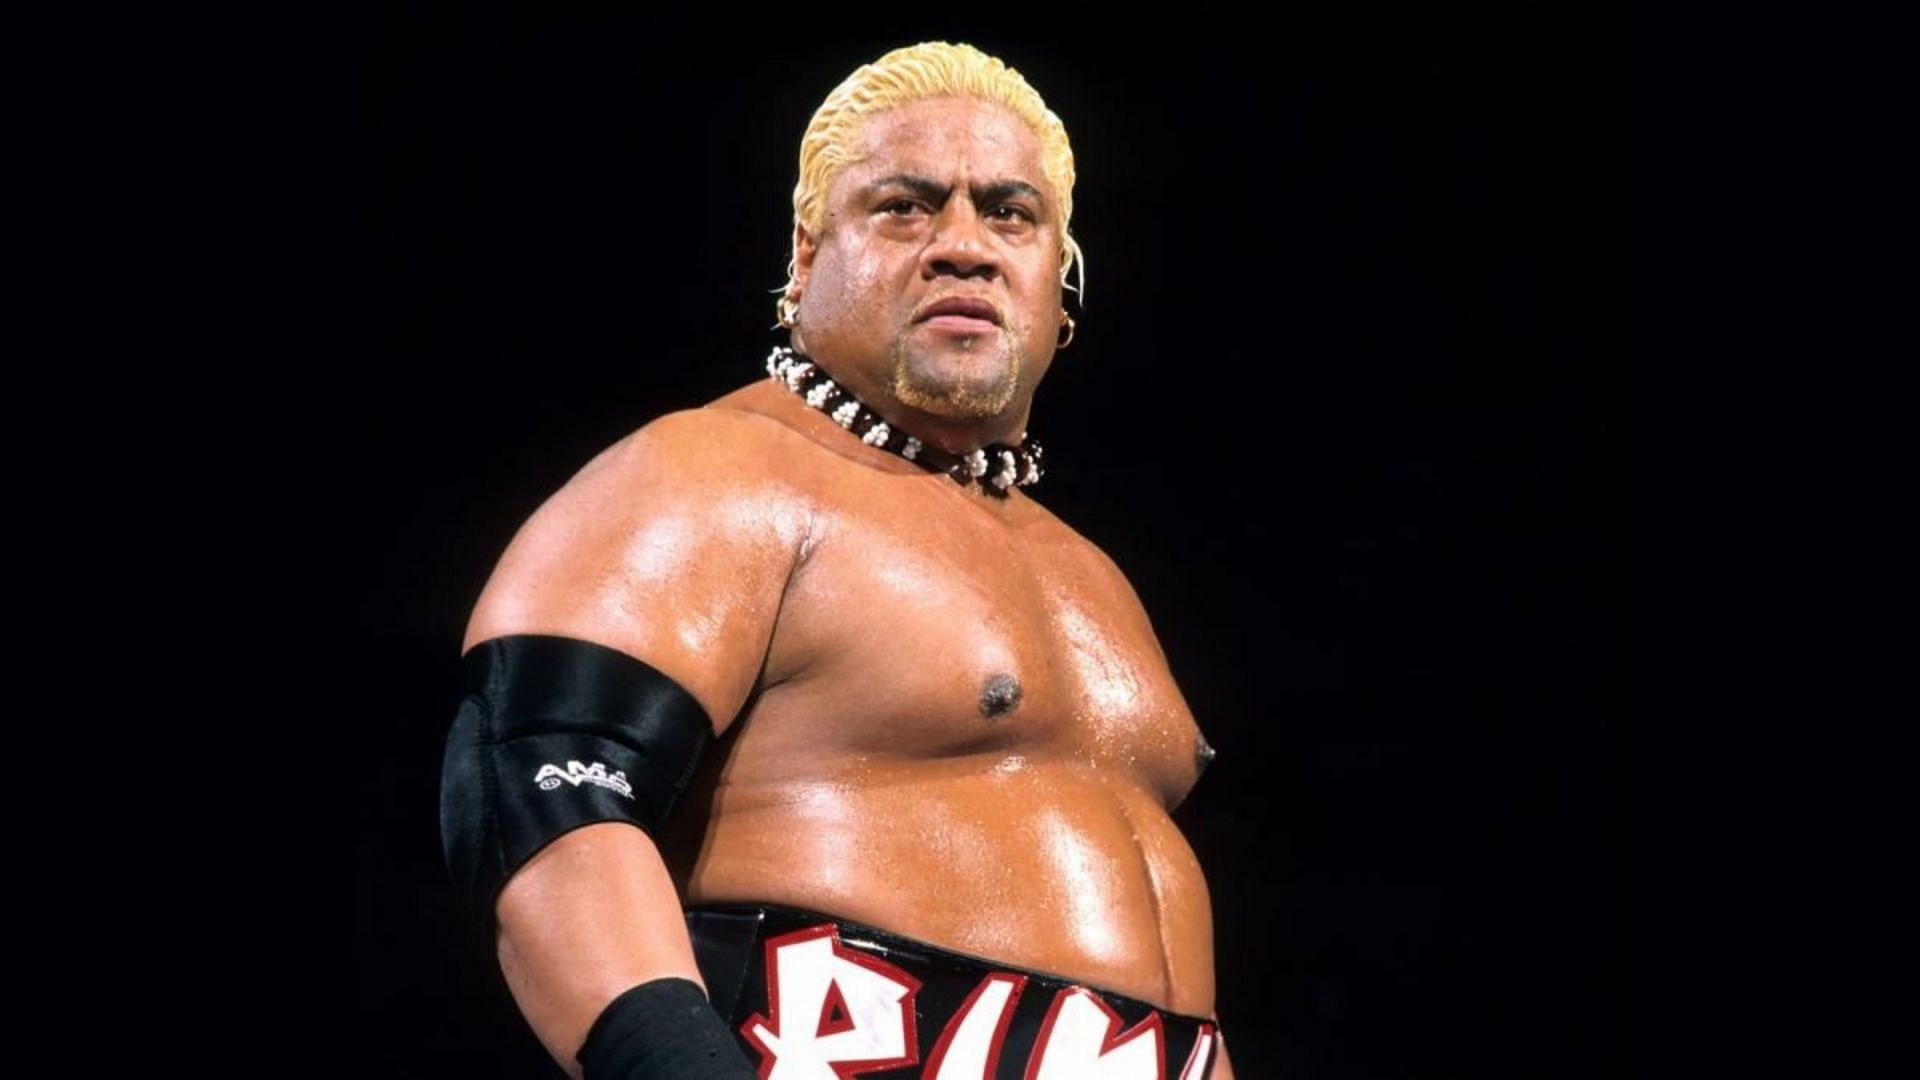 WWE Hall of Famer Rikishi